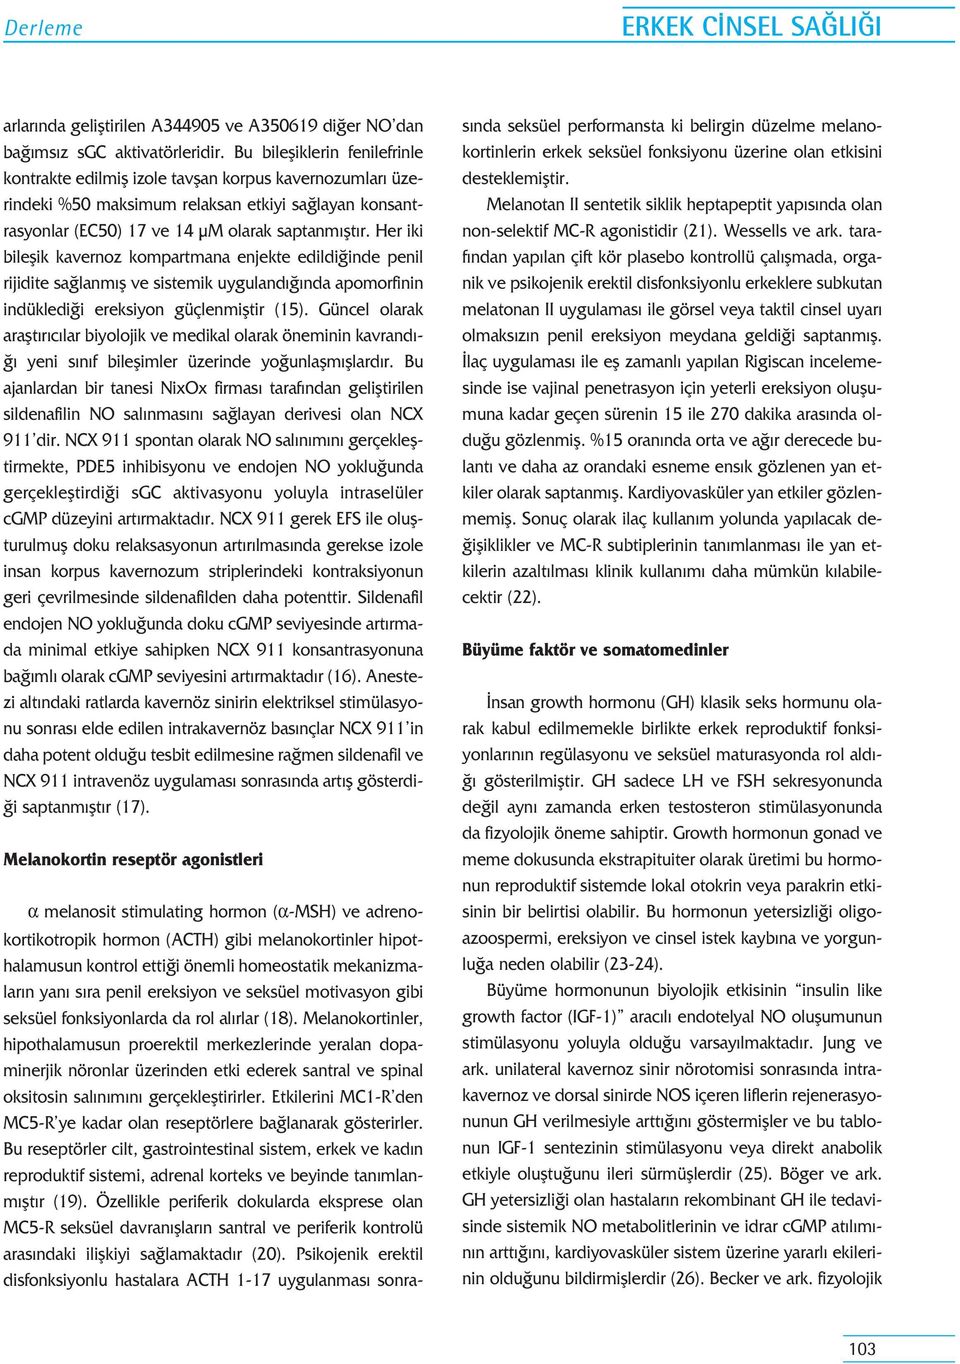 Her iki bileflik kavernoz kompartmana enjekte edildi inde penil rijidite sa lanm fl ve sistemik uyguland nda apomorfinin indükledi i ereksiyon güçlenmifltir (15).